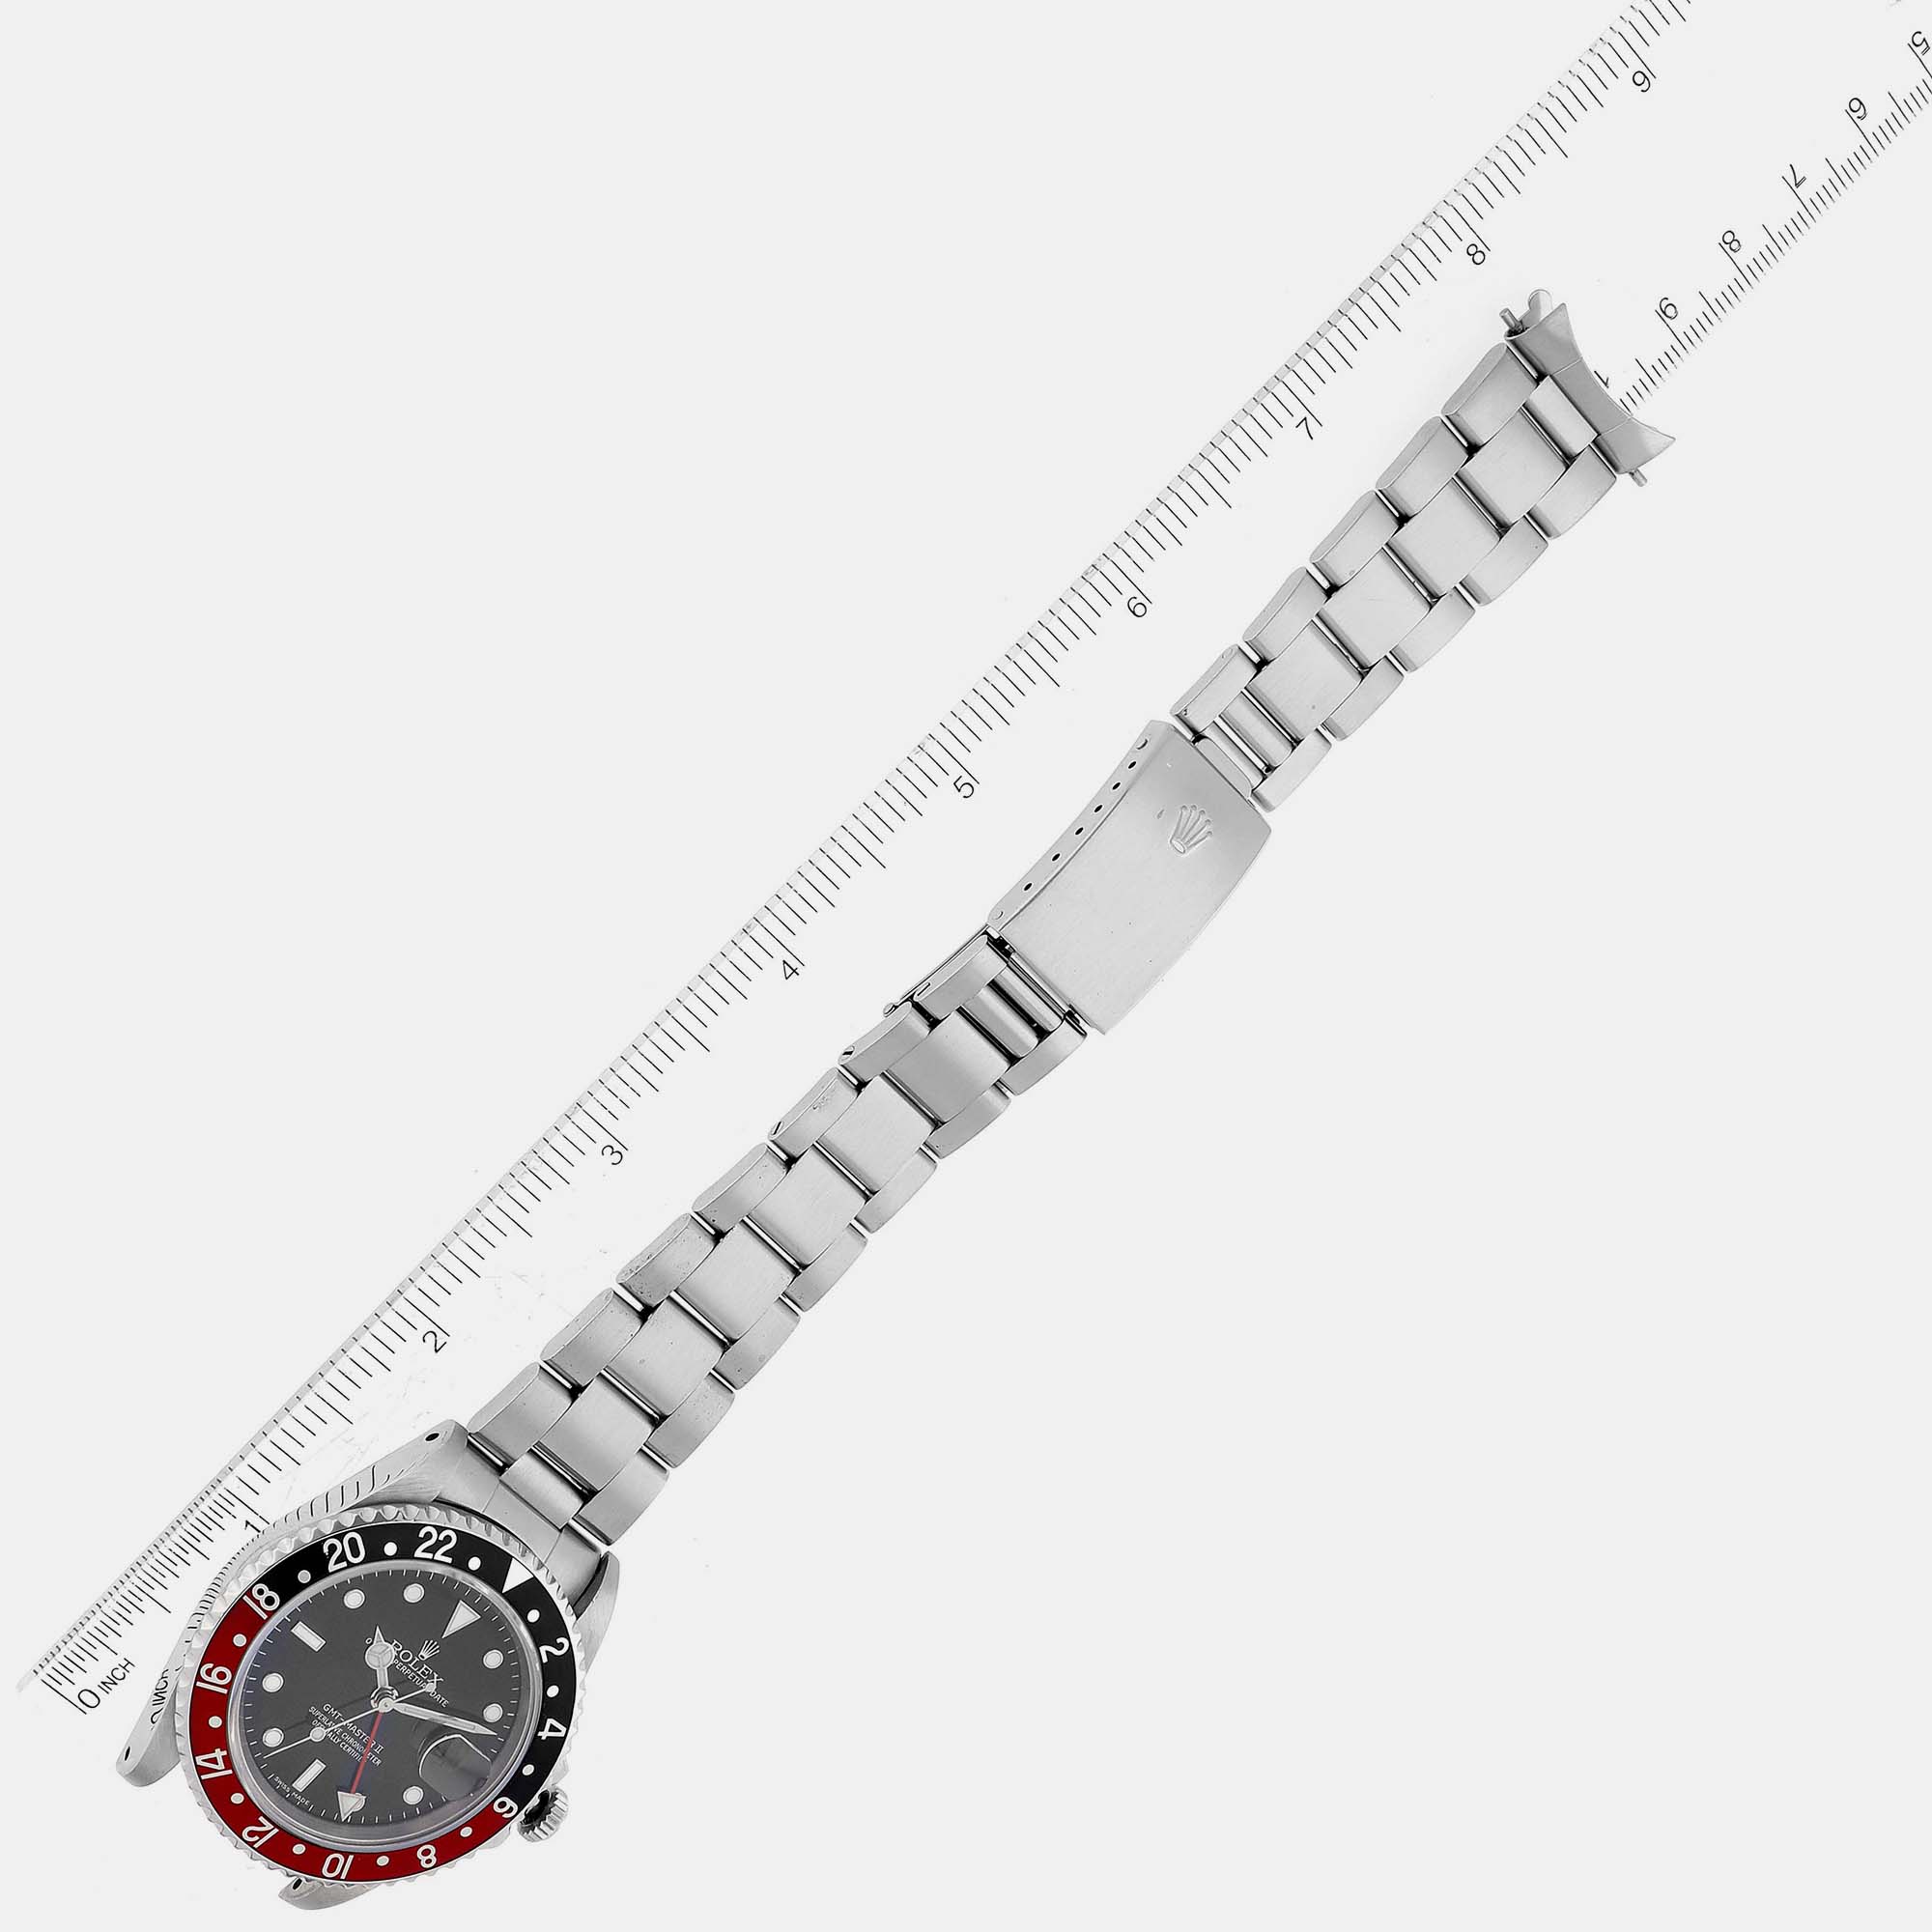 Rolex GMT Master II Black Red Coke Bezel Steel Men's Watch 16710 40 Mm